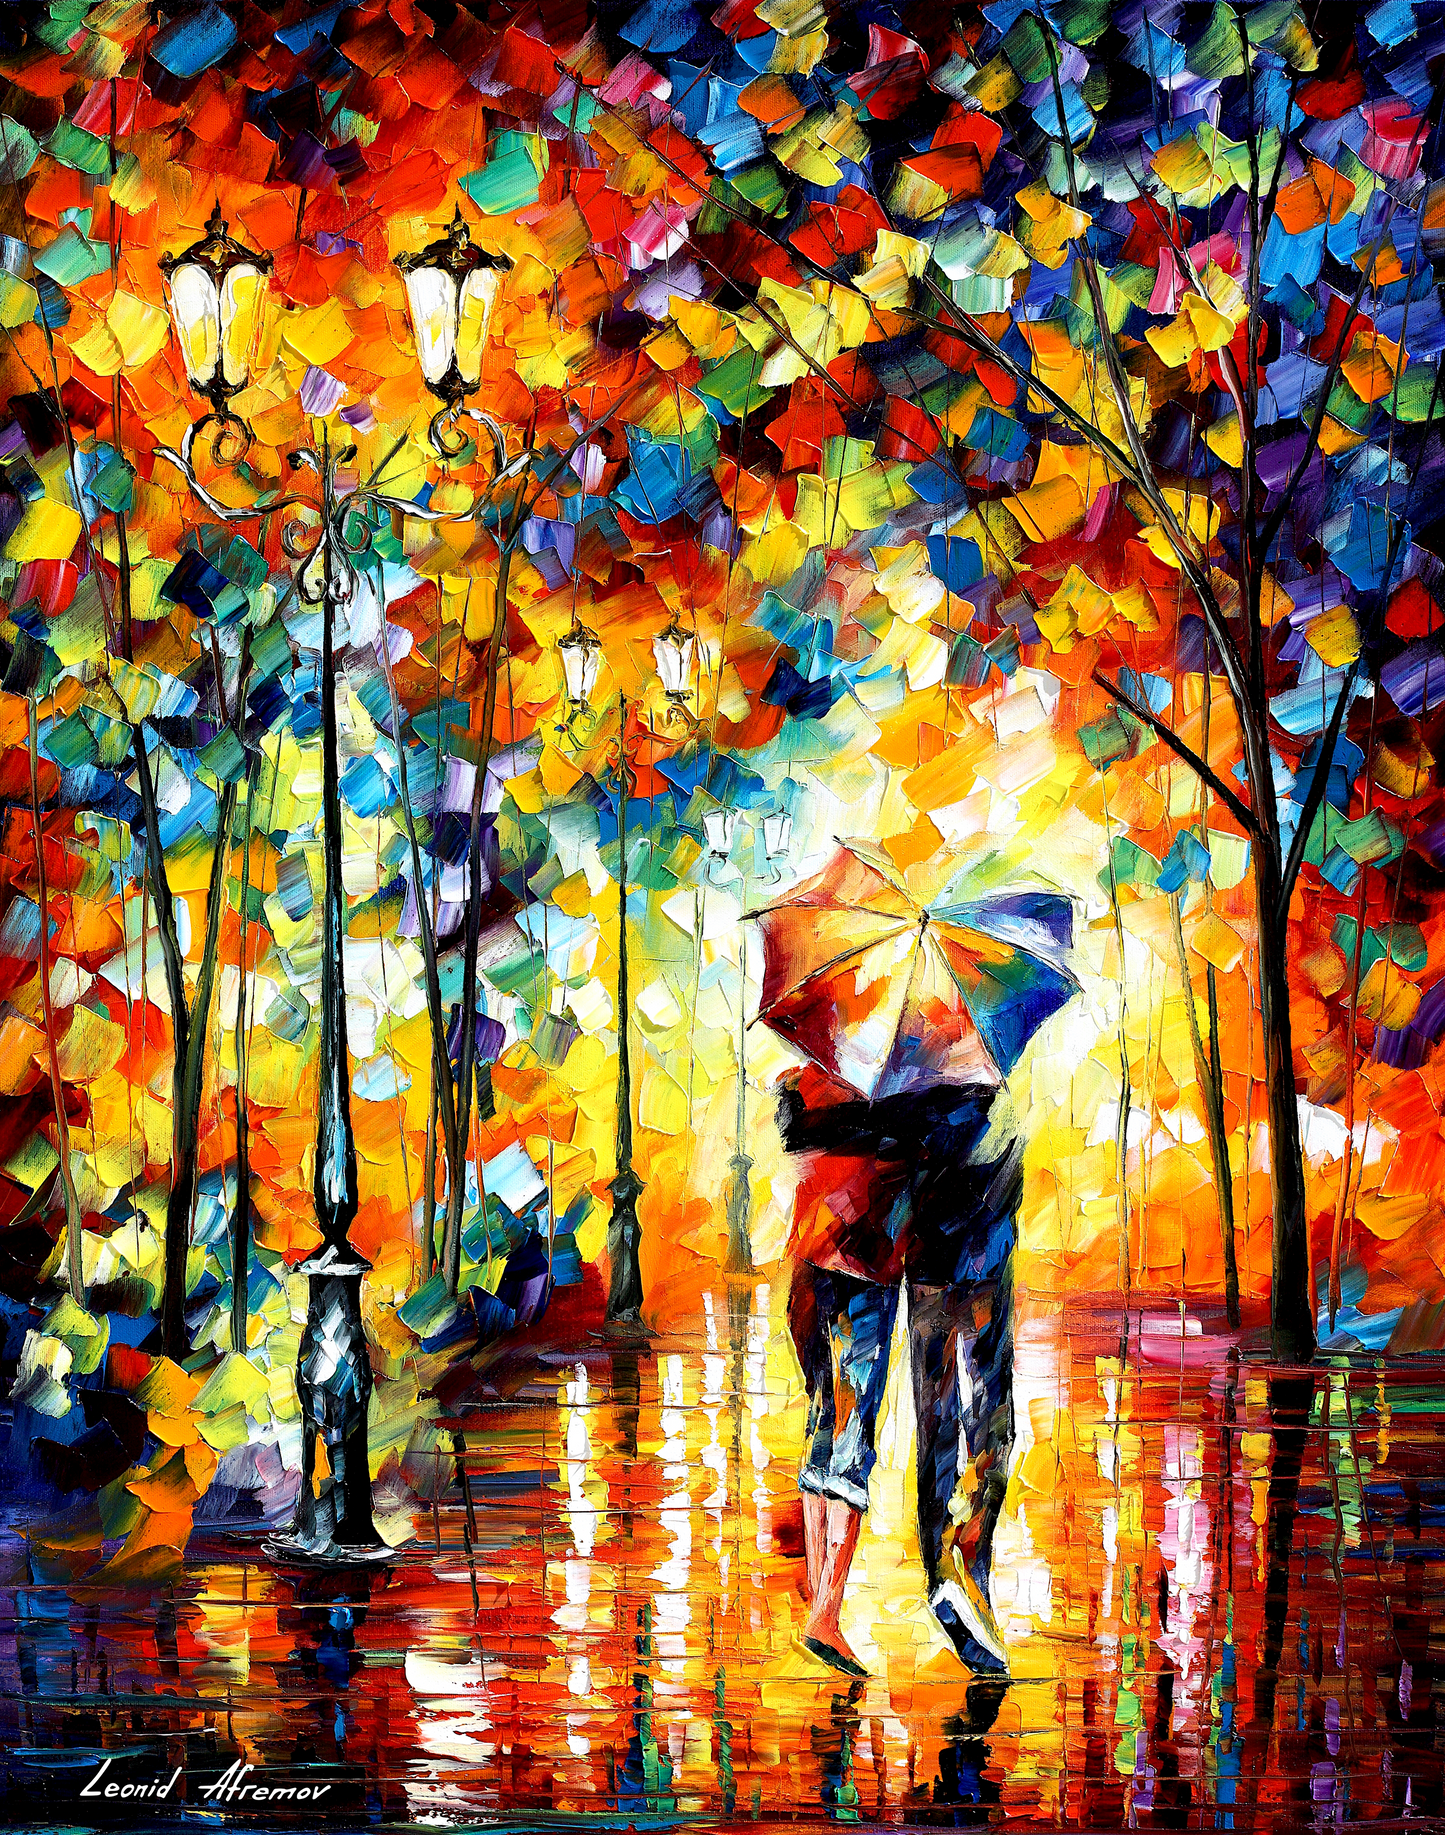 Leonid Afremov couple under one umbrella  Puzzle Painting